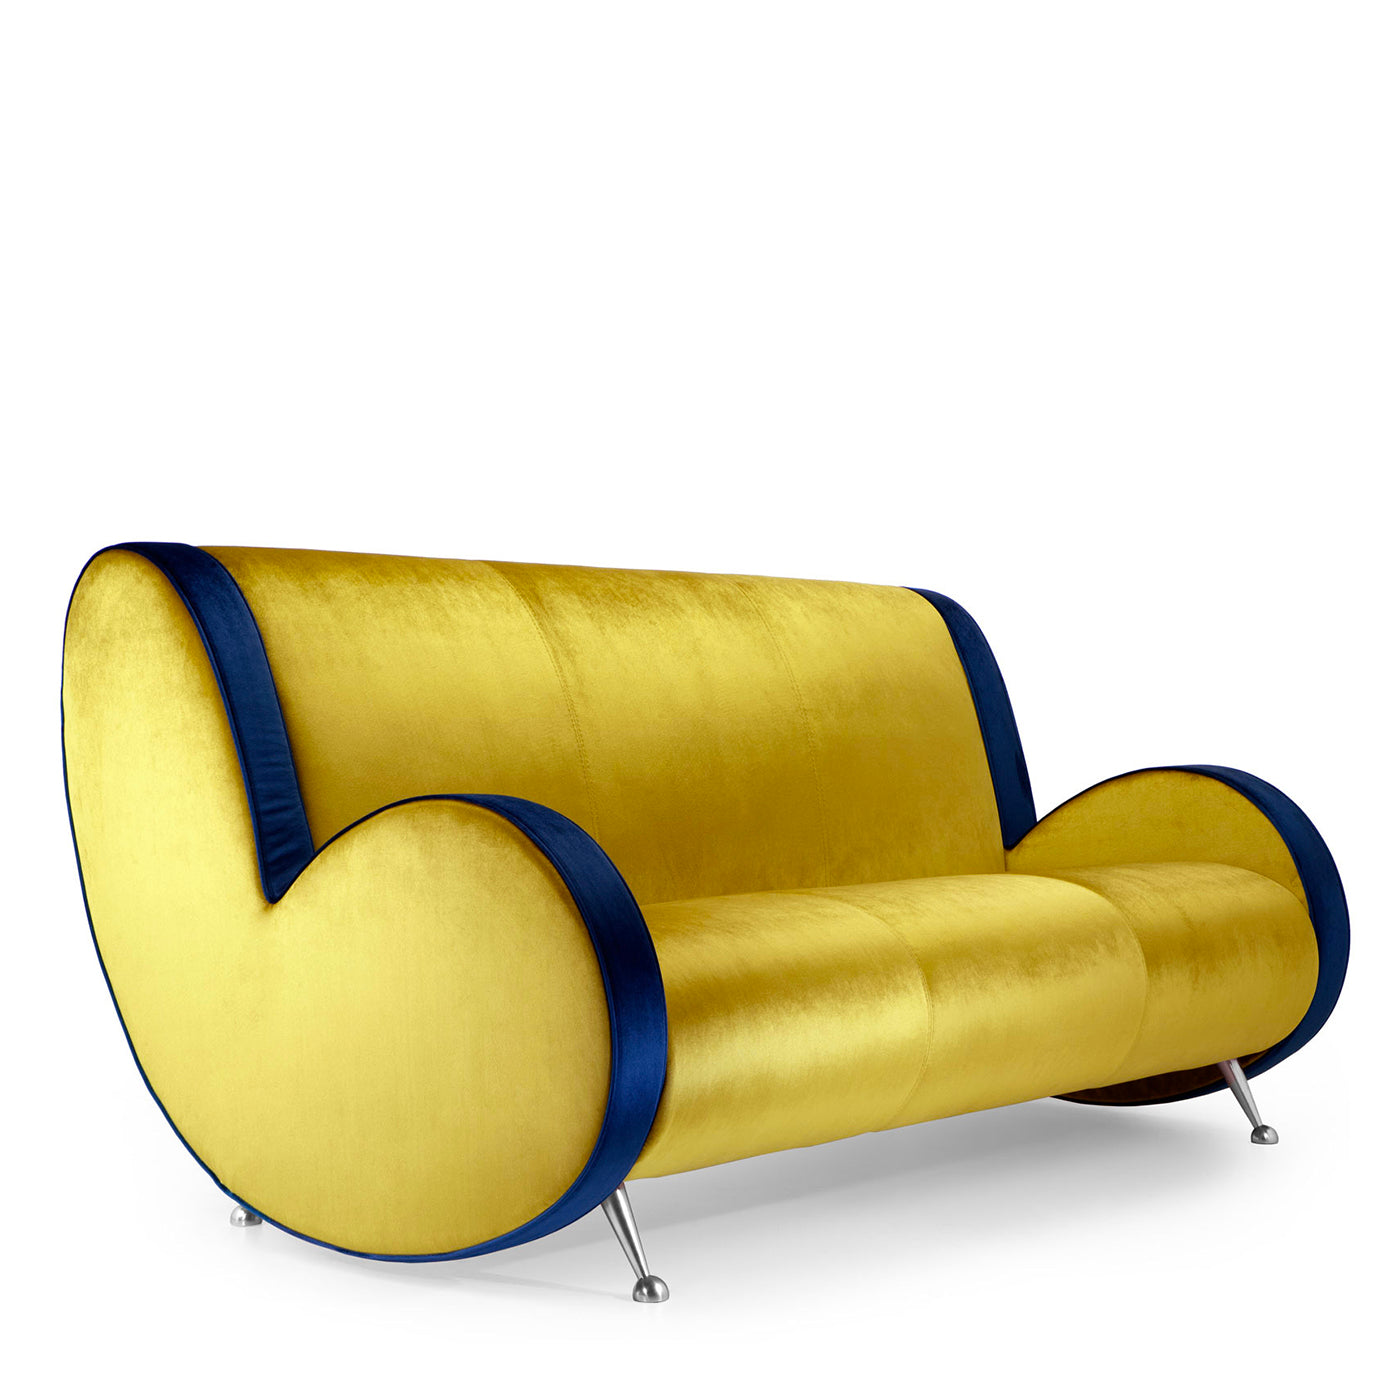 Ata 3-Seater Blue & Gold Sofa by Simone Micheli - Alternative view 1